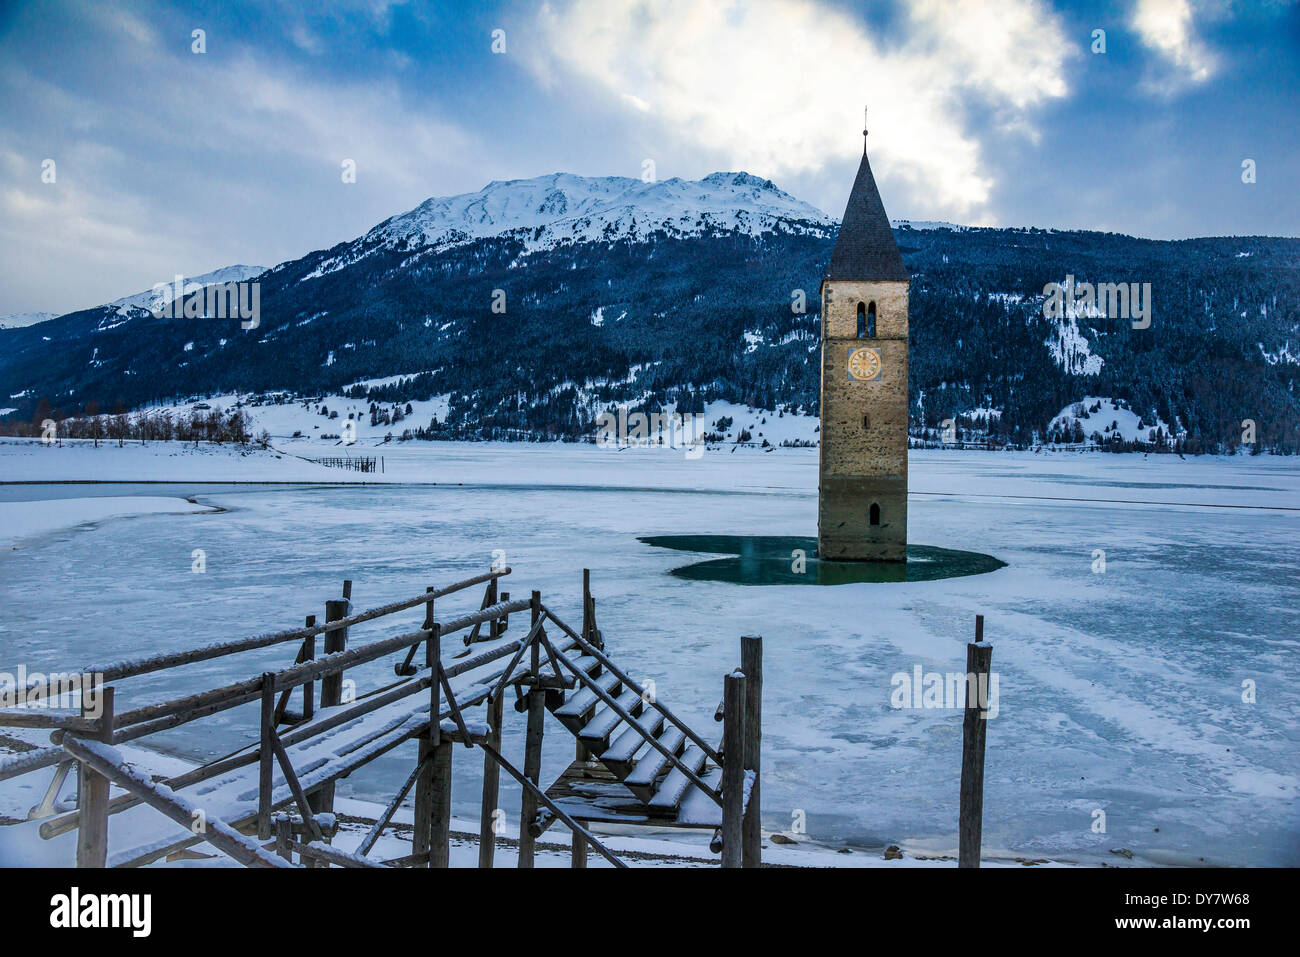 Chiesa torre del lago di Resia, Graun, Passo Resia, Val Venosta, Alto Adige, Italia Foto Stock